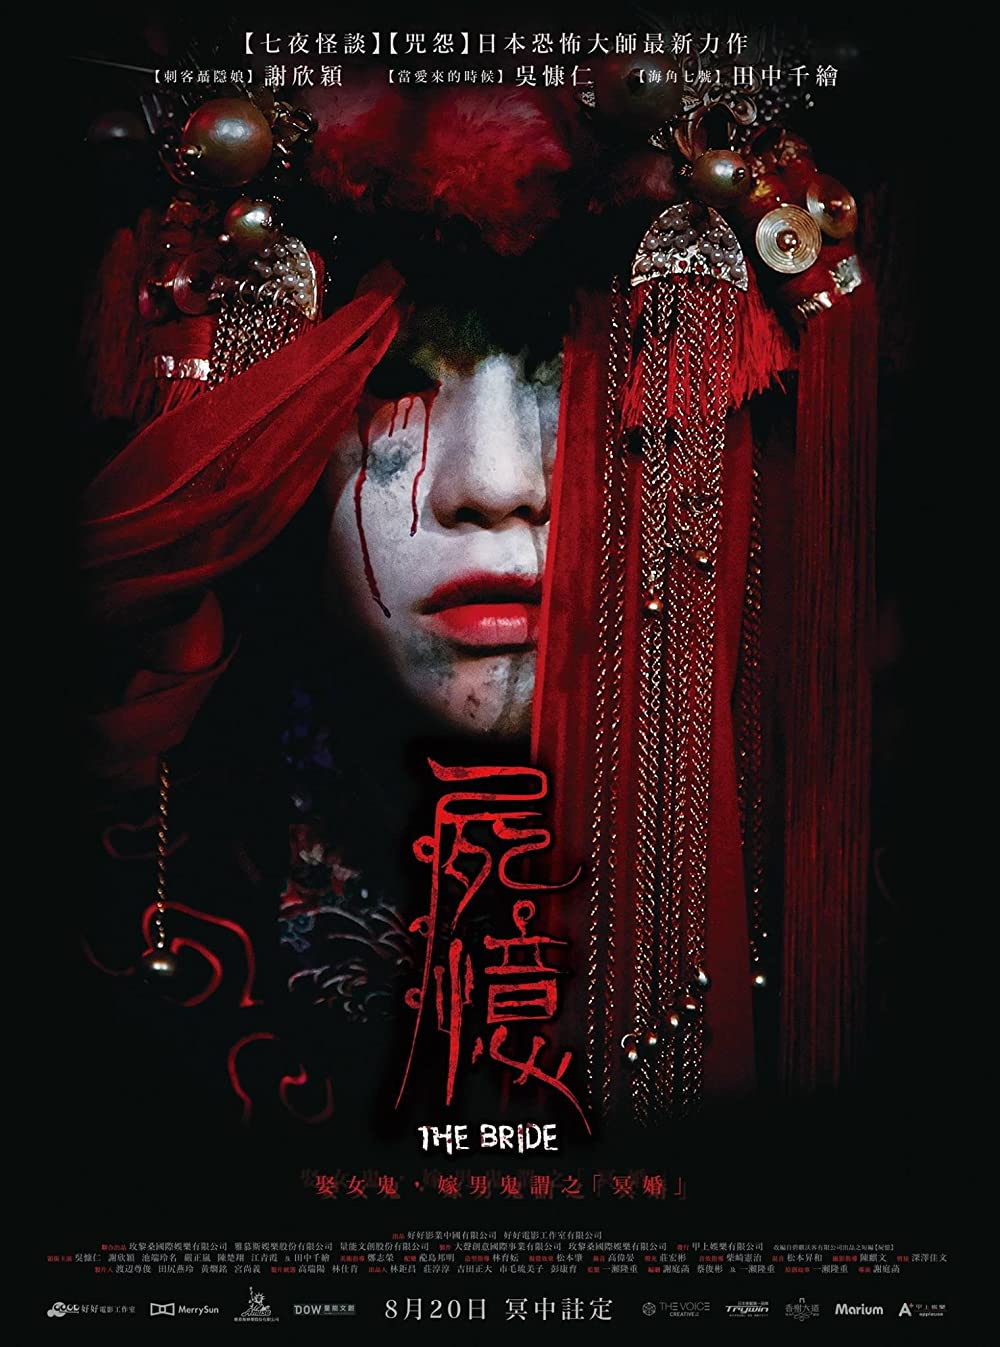 台灣恐怖電影推薦:《屍憶》2015